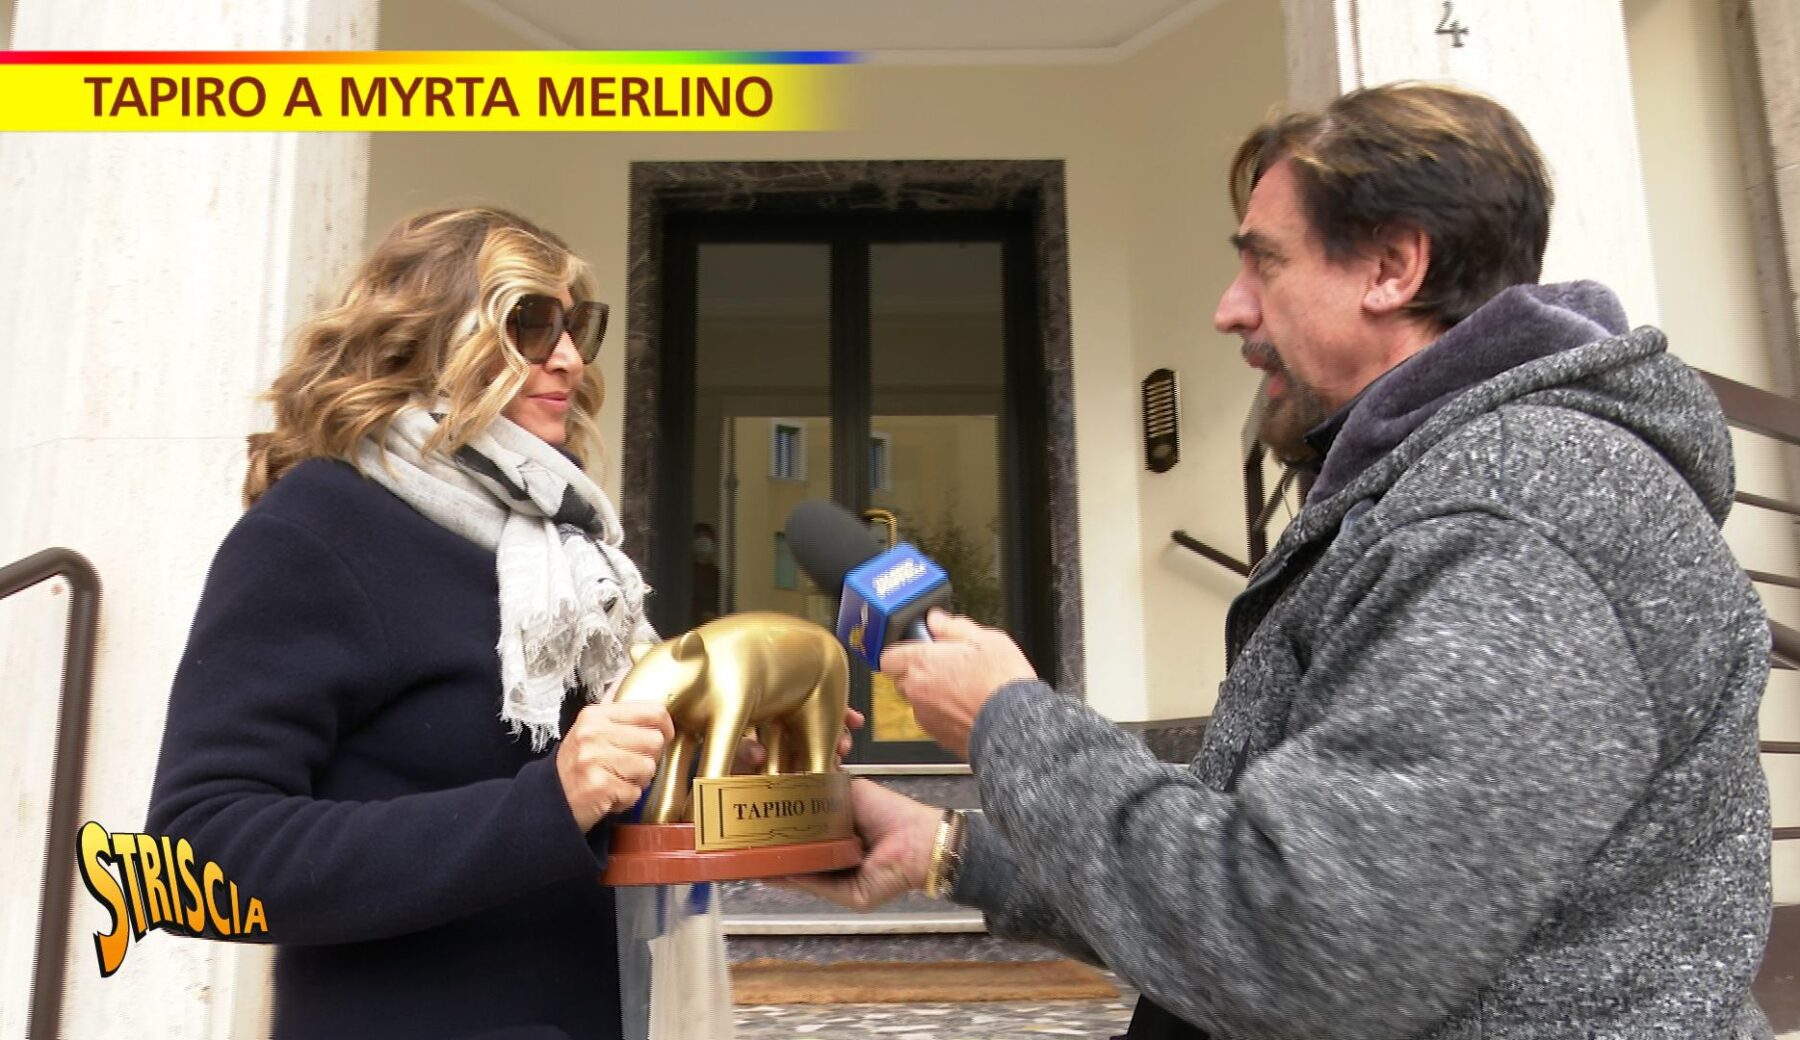 Tapiro d’oro a Myrta Merlino, accusata di maltrattare i suoi collaboratori